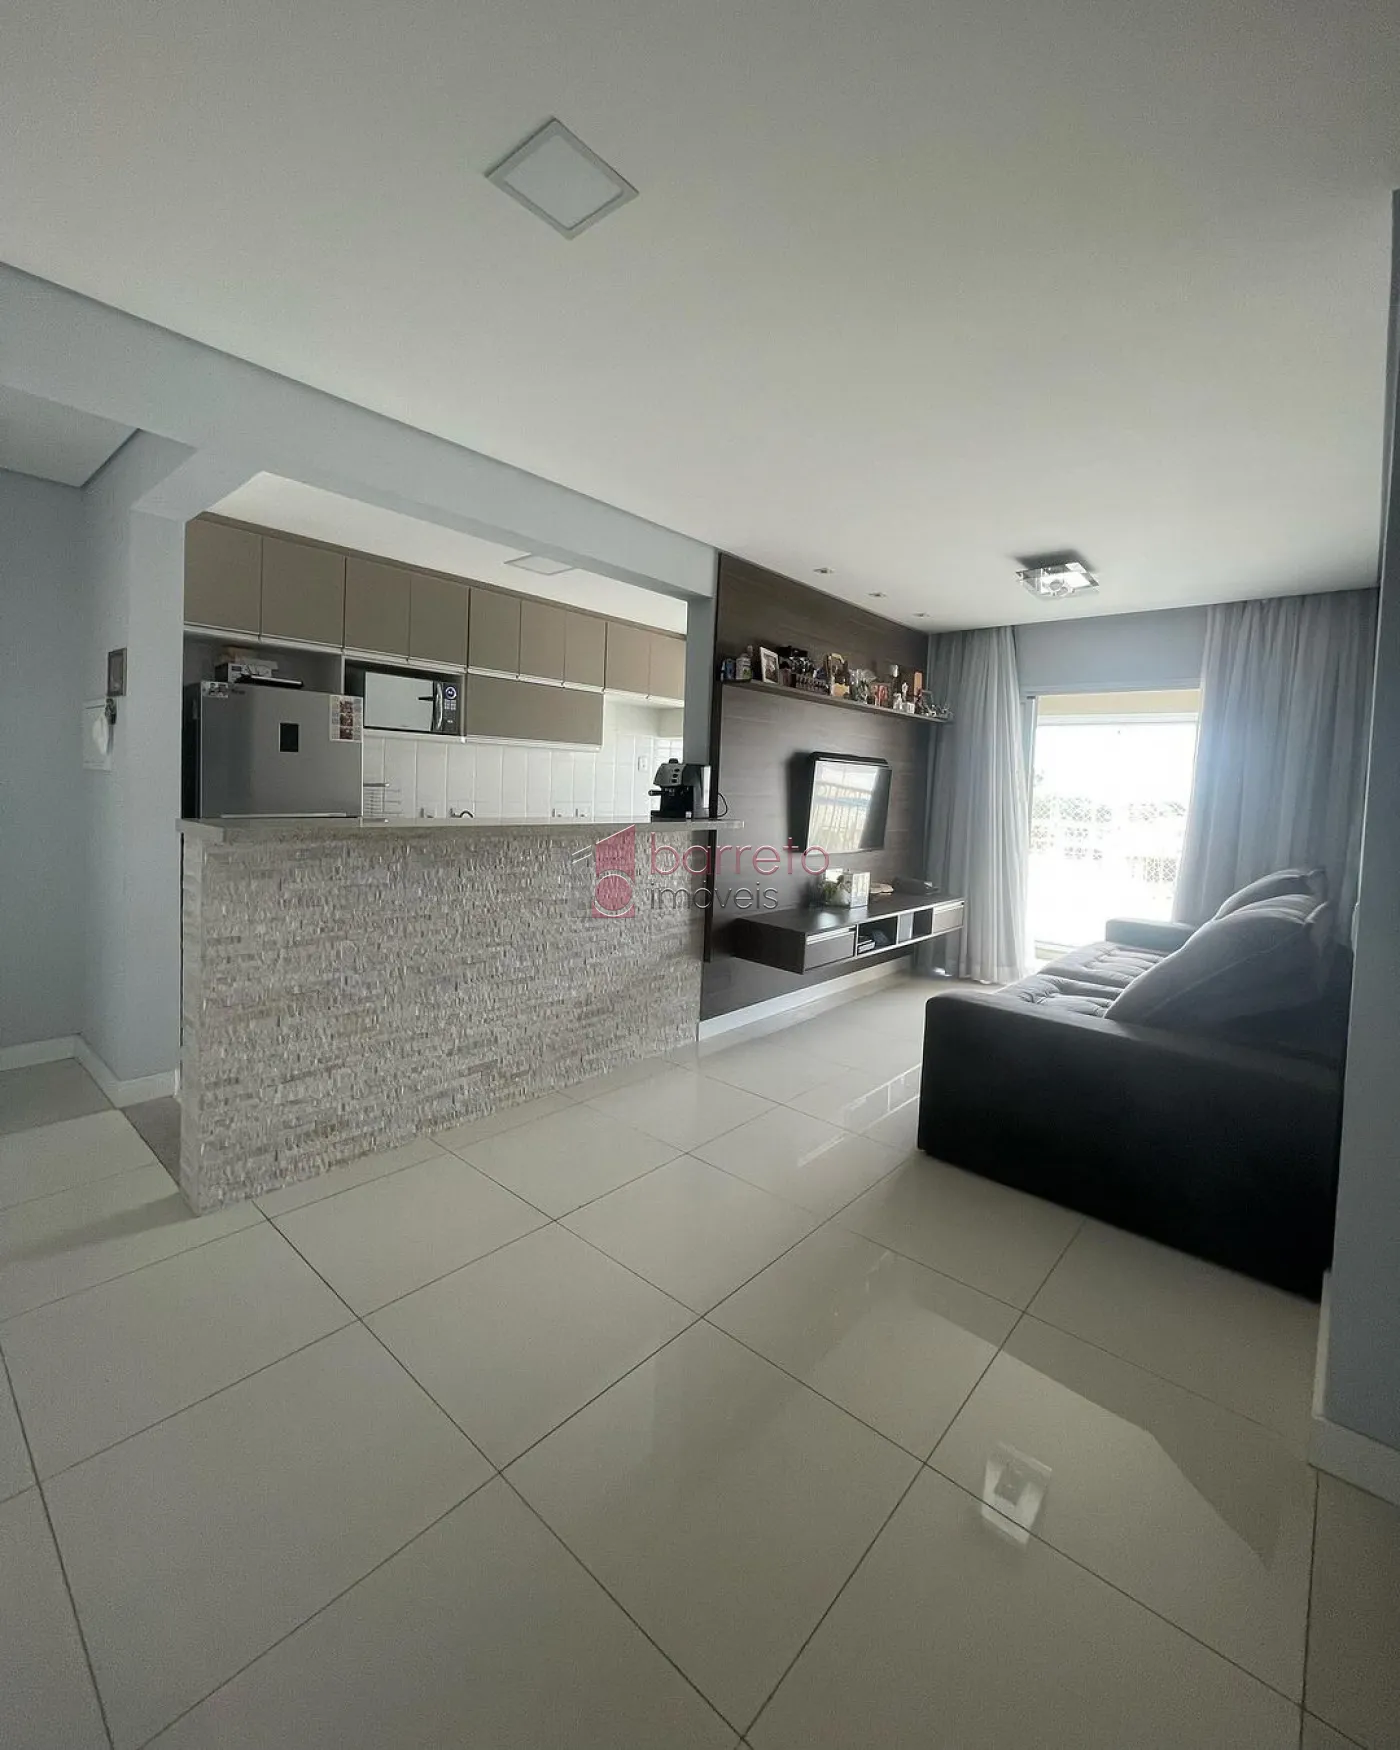 Comprar Apartamento / Padrão em Jundiaí R$ 580.000,00 - Foto 1